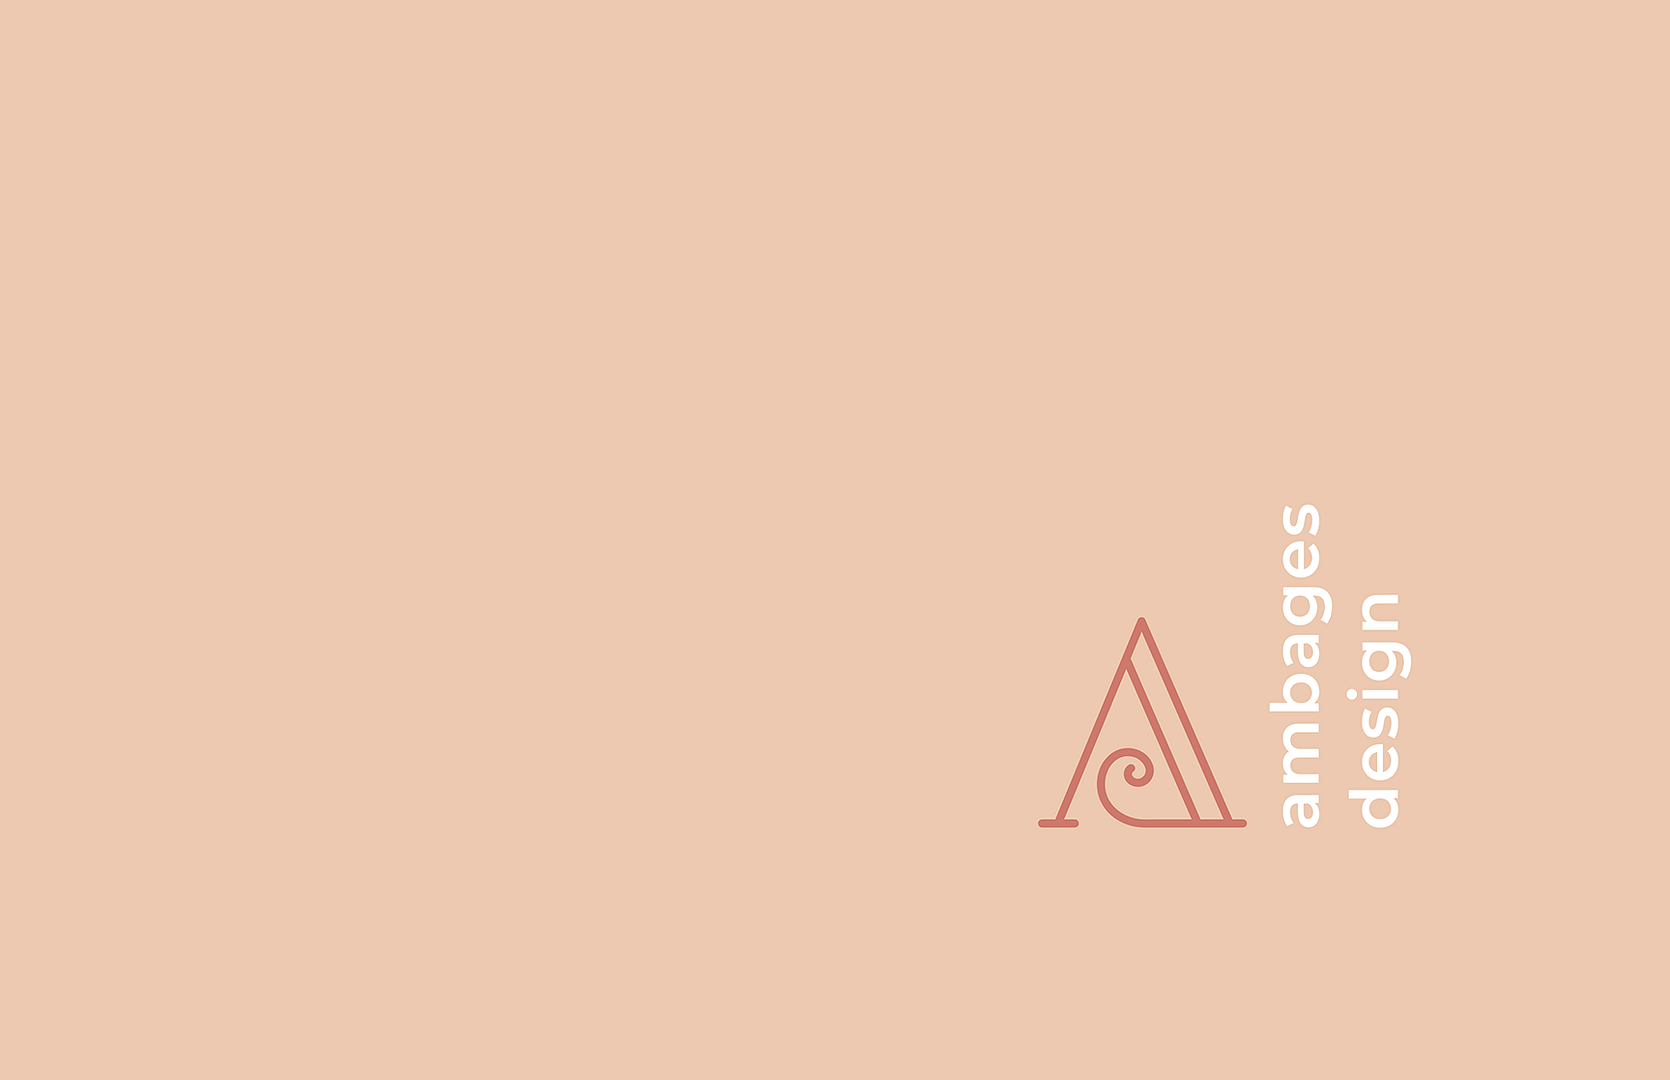 Ambages Design logo by Anna Kuti-Krvavac